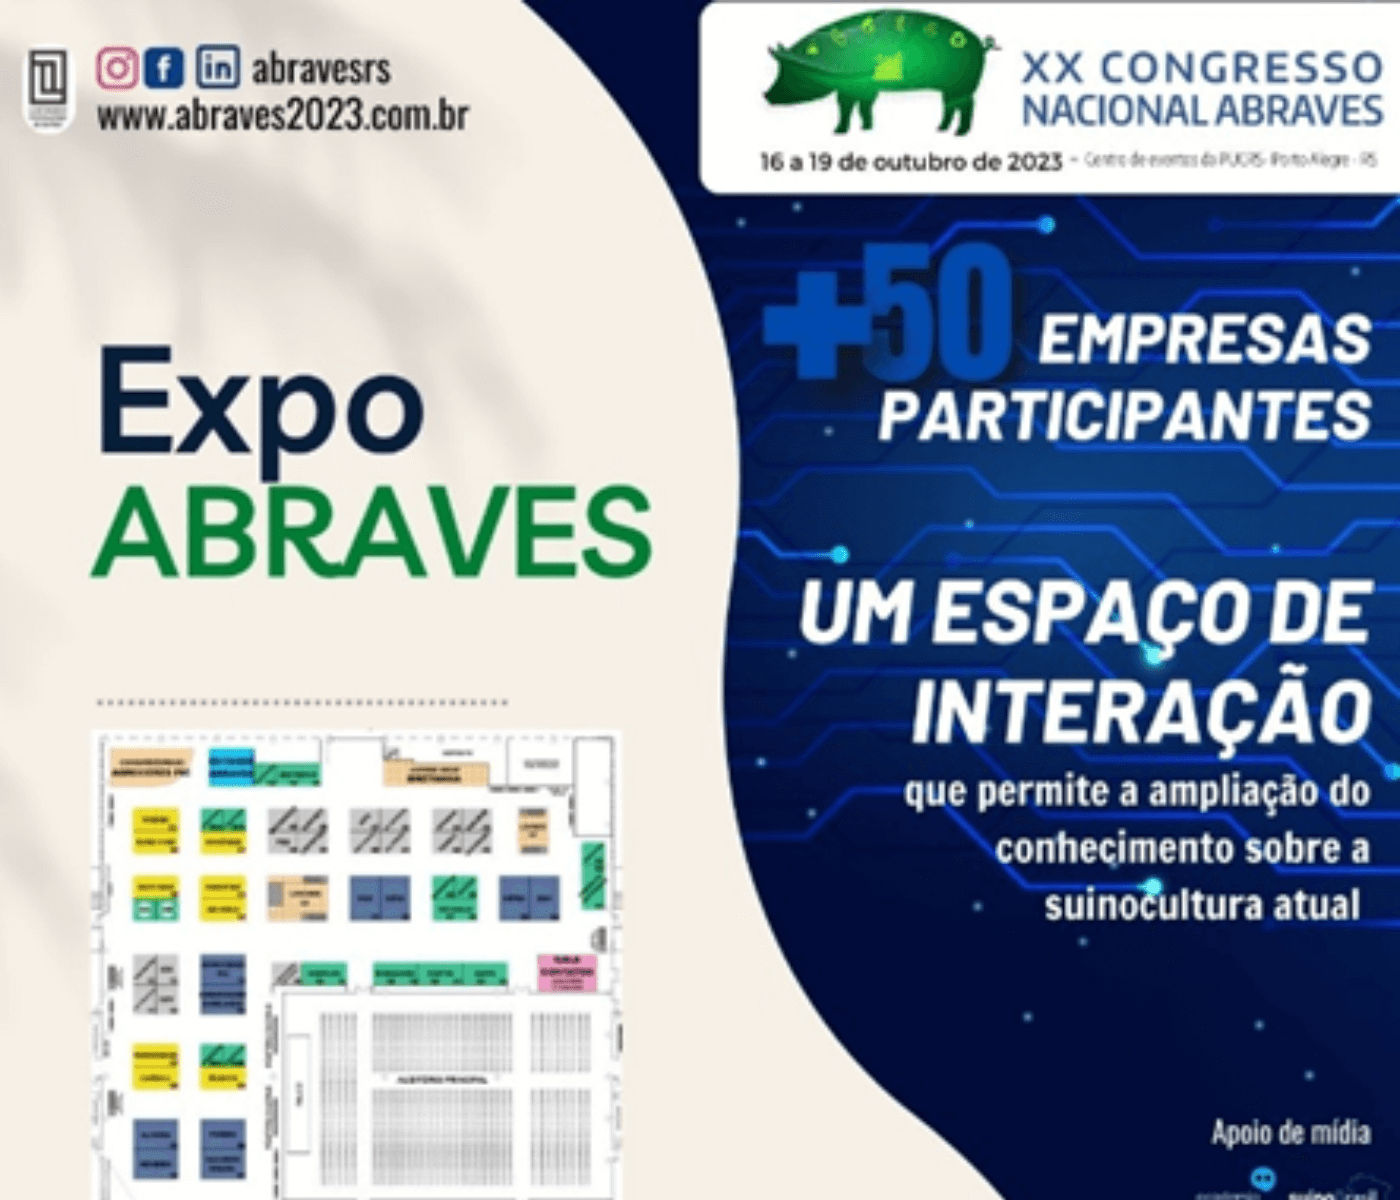 EXPO-ABRAVES: exposição técnica que ocorre durante o XX Congresso Nacional da ABRAVES 2023